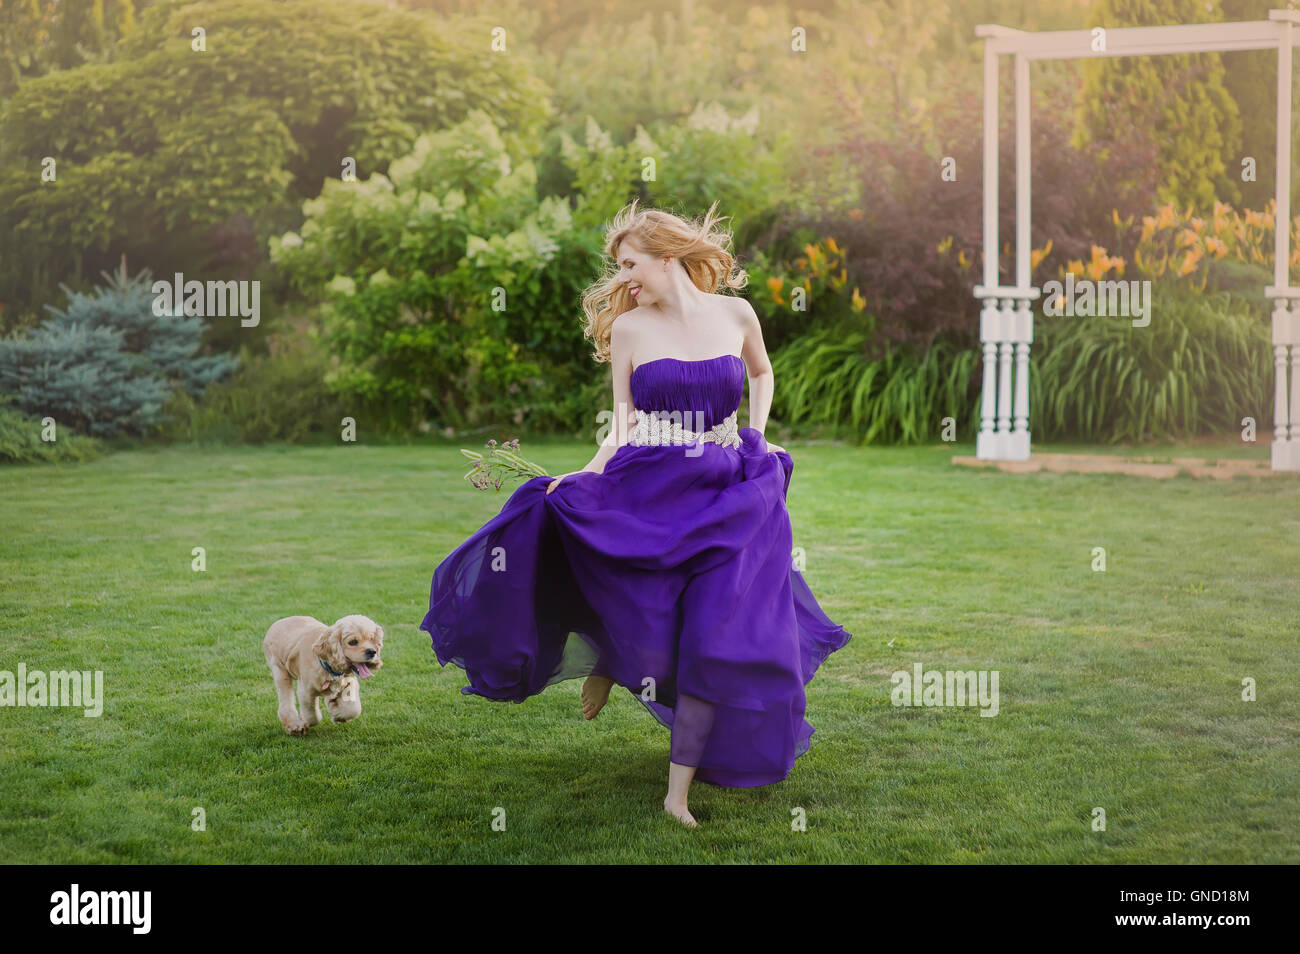 Schöne Mädchen auf Rasen mit Hund laufen. Brautjungfer in einem lila Abendkleid. Stockfoto